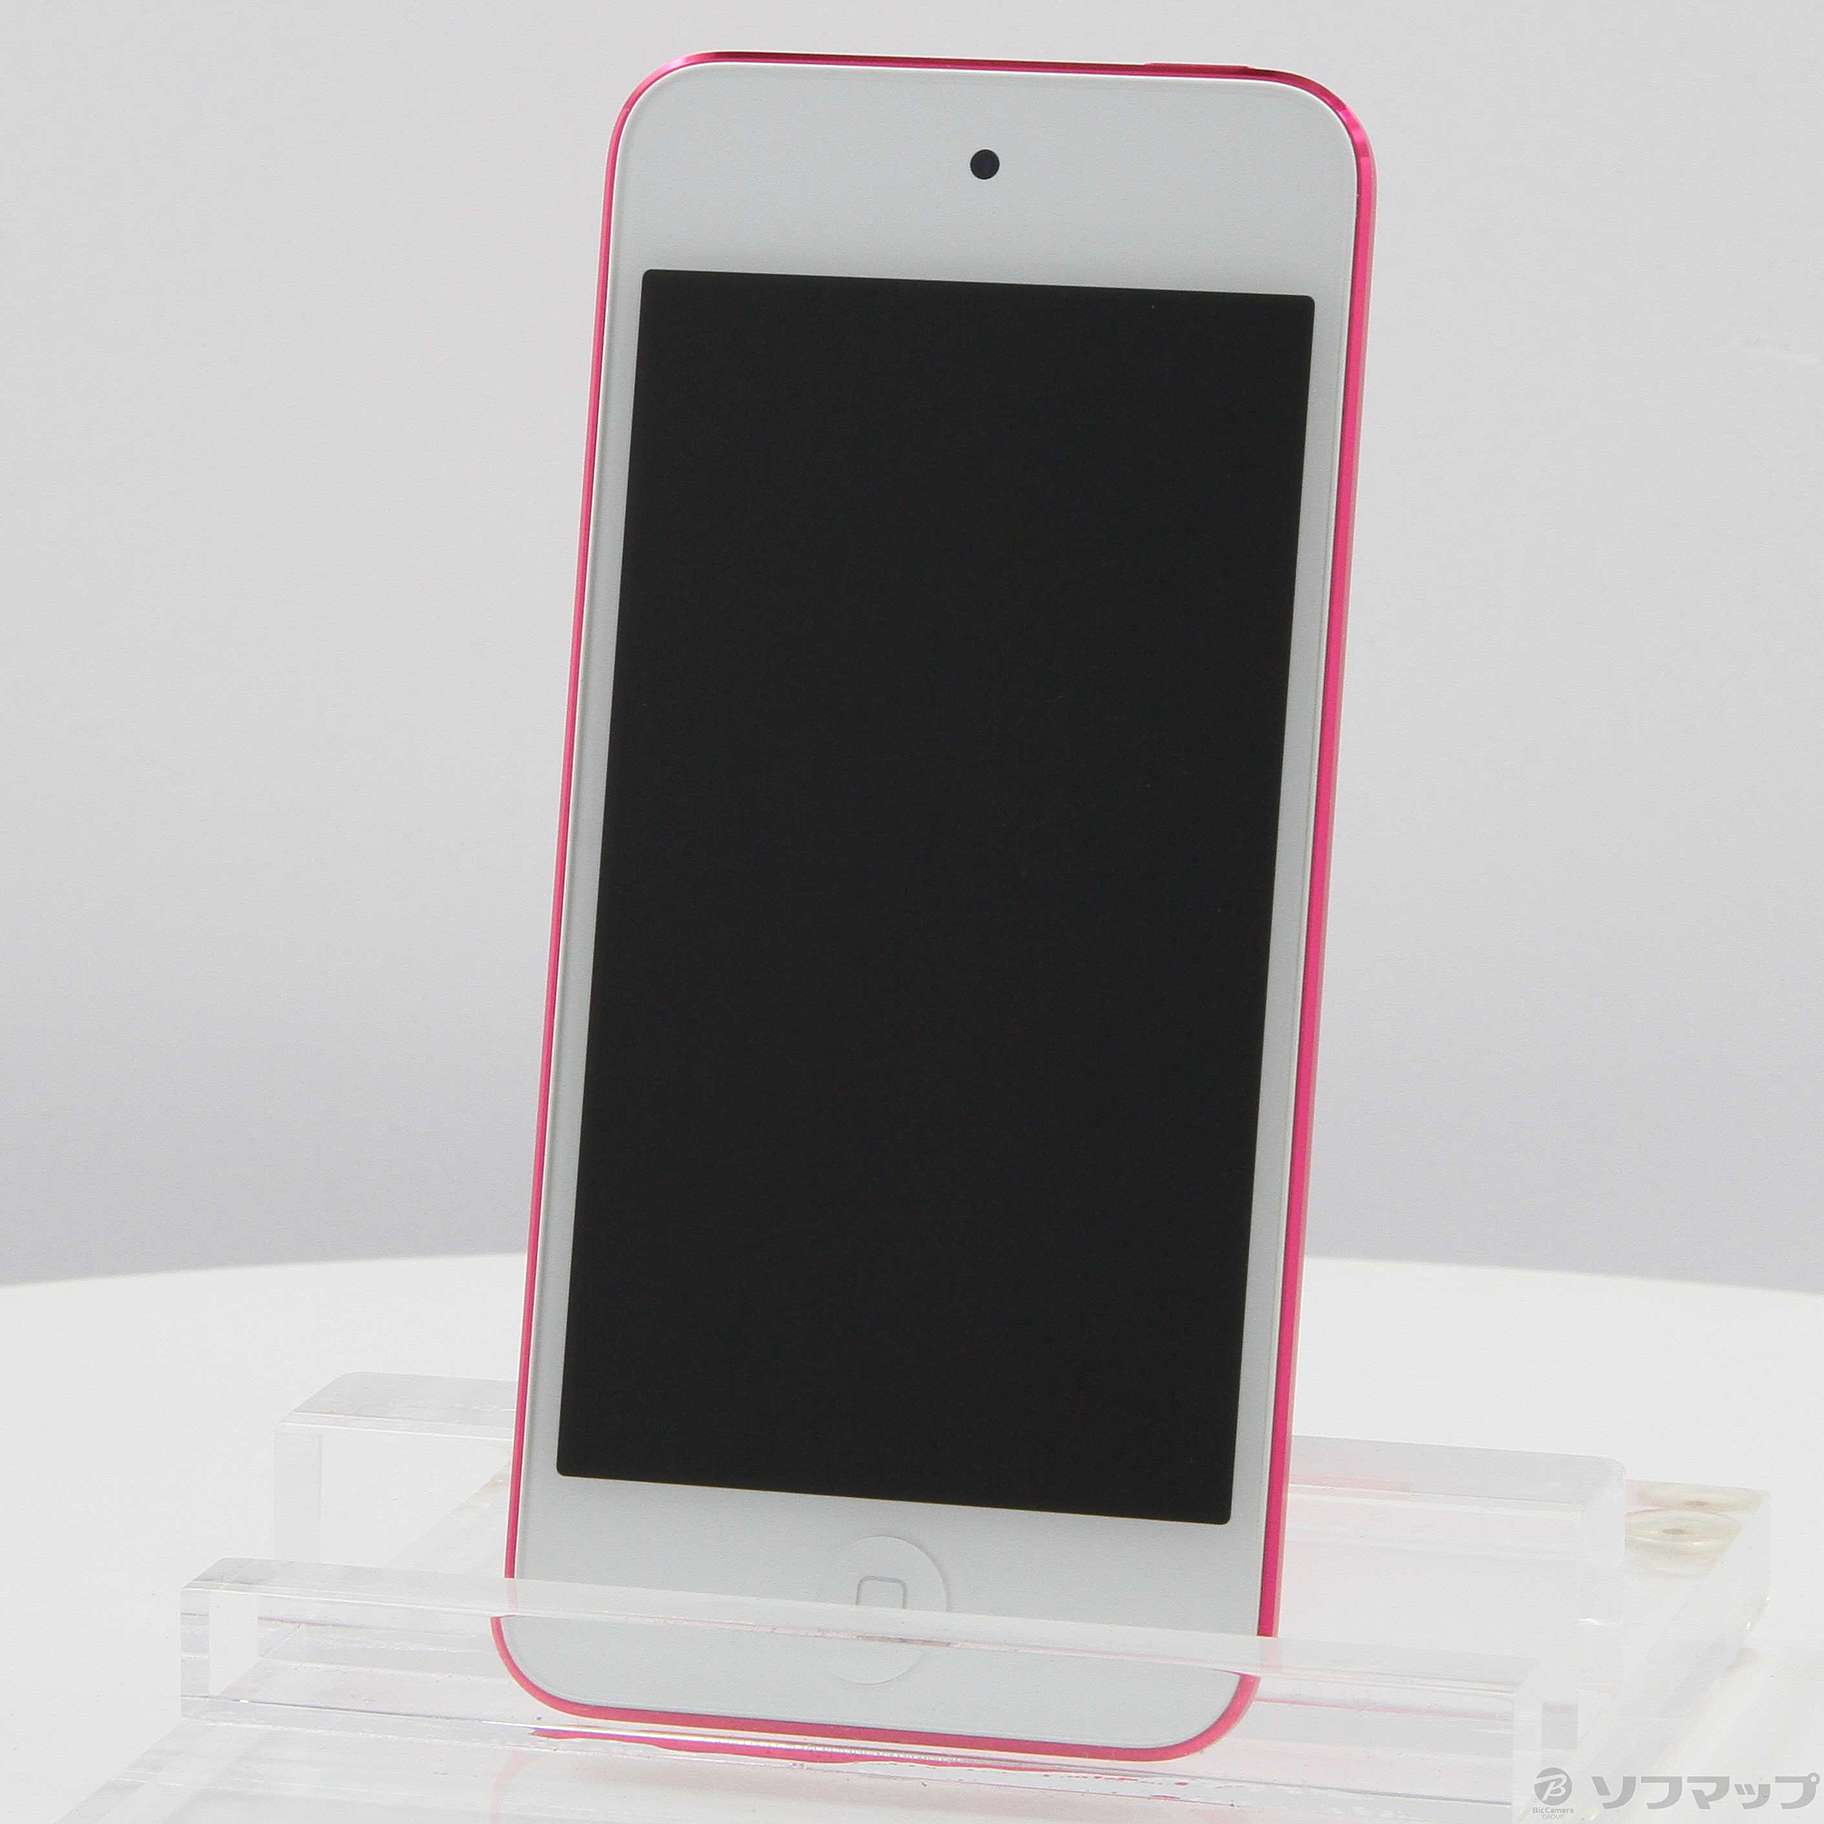 昨日確認した価格で購入希望ですiPod touch 第6世代 128GB ピンク